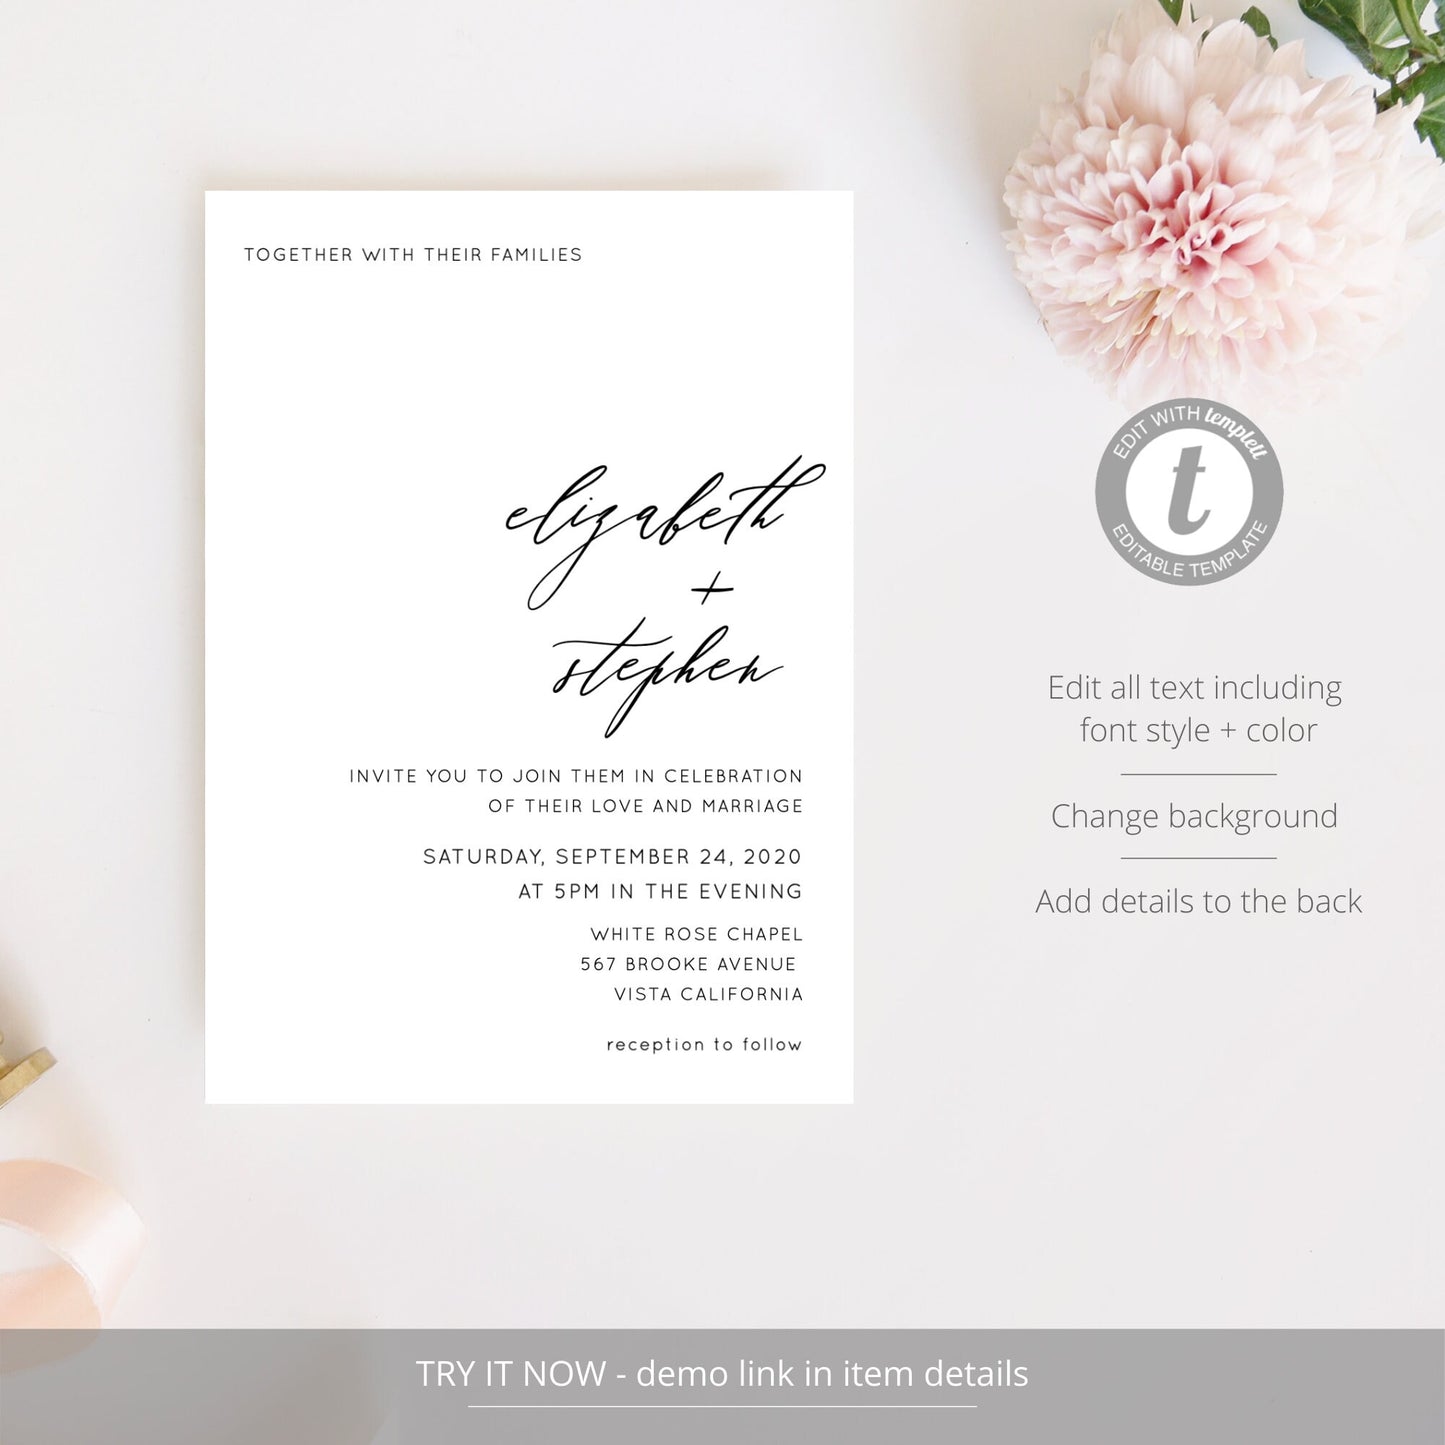 Editable Wedding Invitation Modern Minimalist Wedding Invitation Template